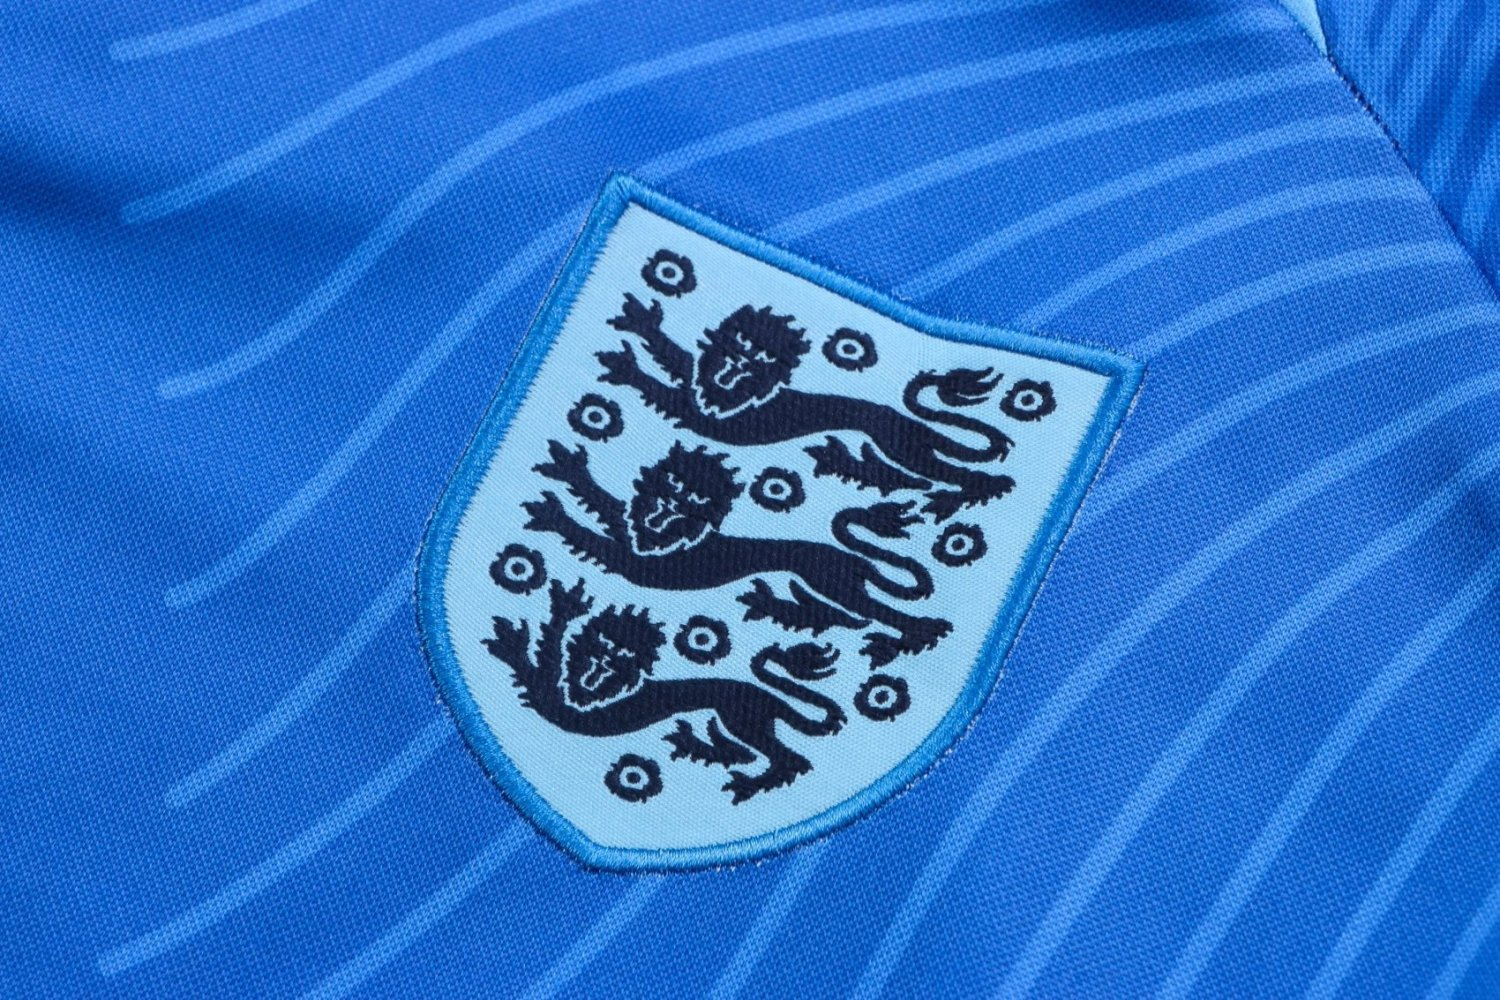 England Soccer Training Suit Blue 3D Print 2022/23 Mens